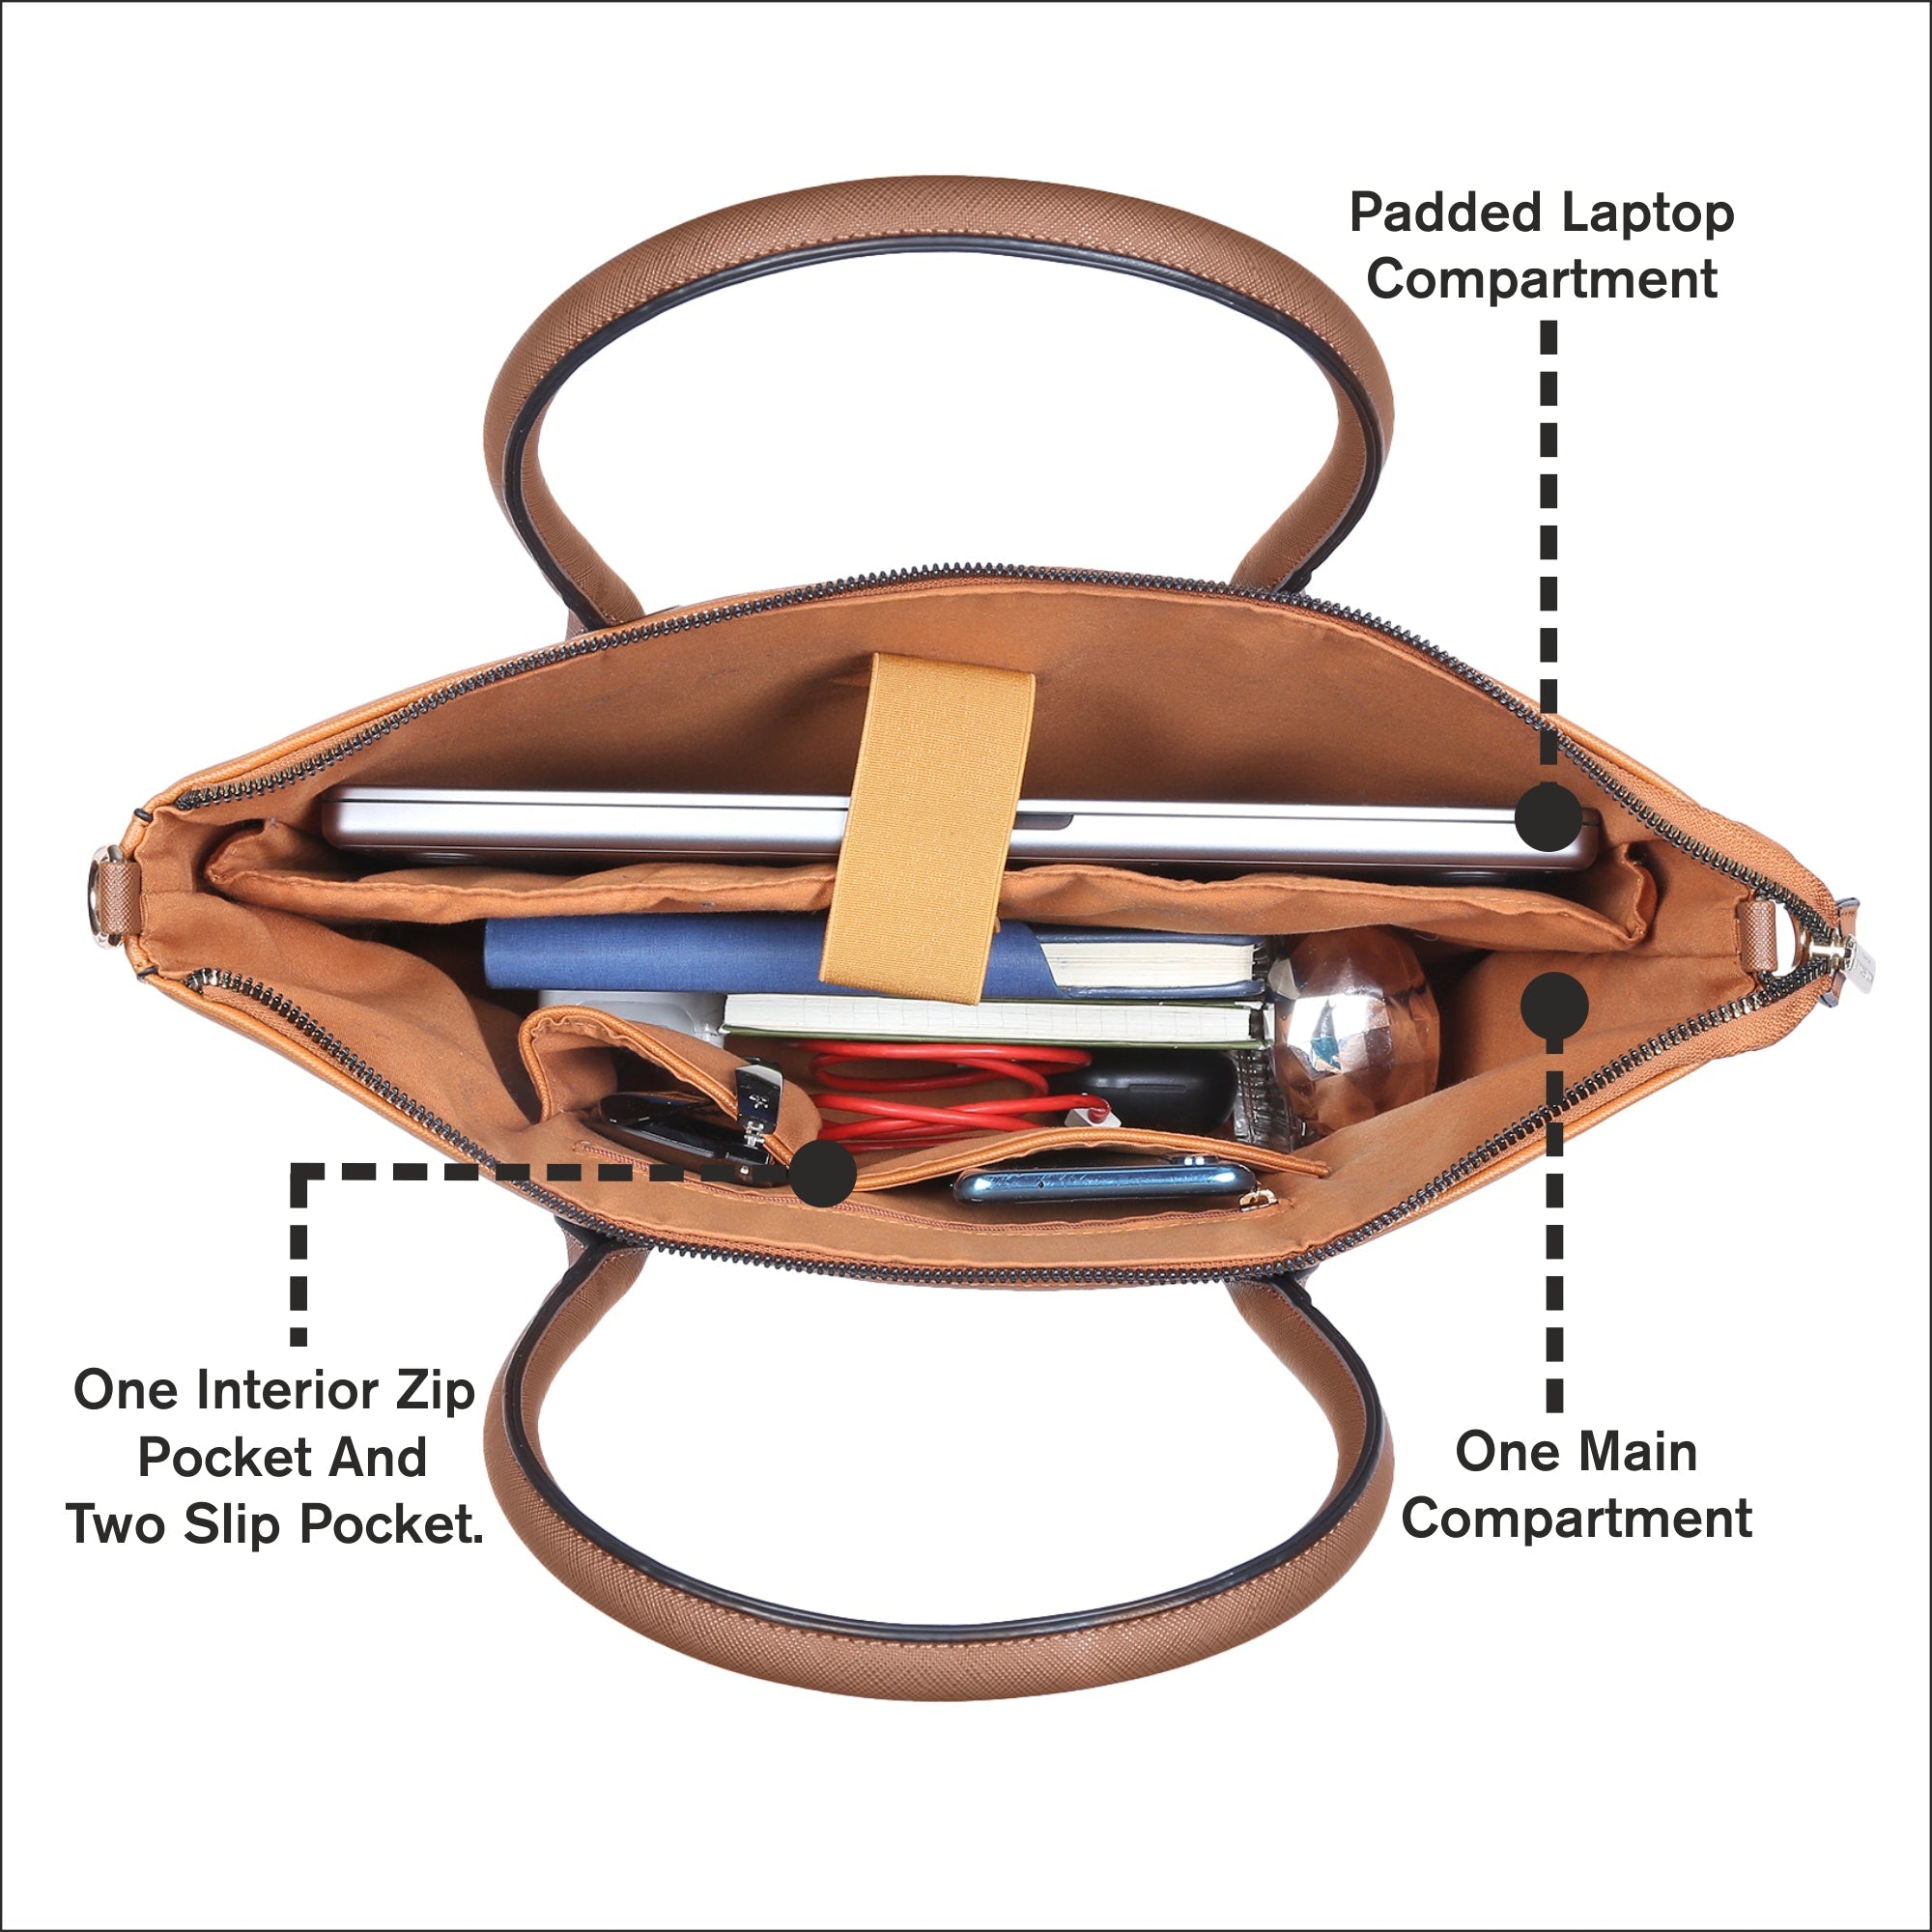 Accessorize London Women's Faux Leather Tan Sapphire laptop handheld Bag